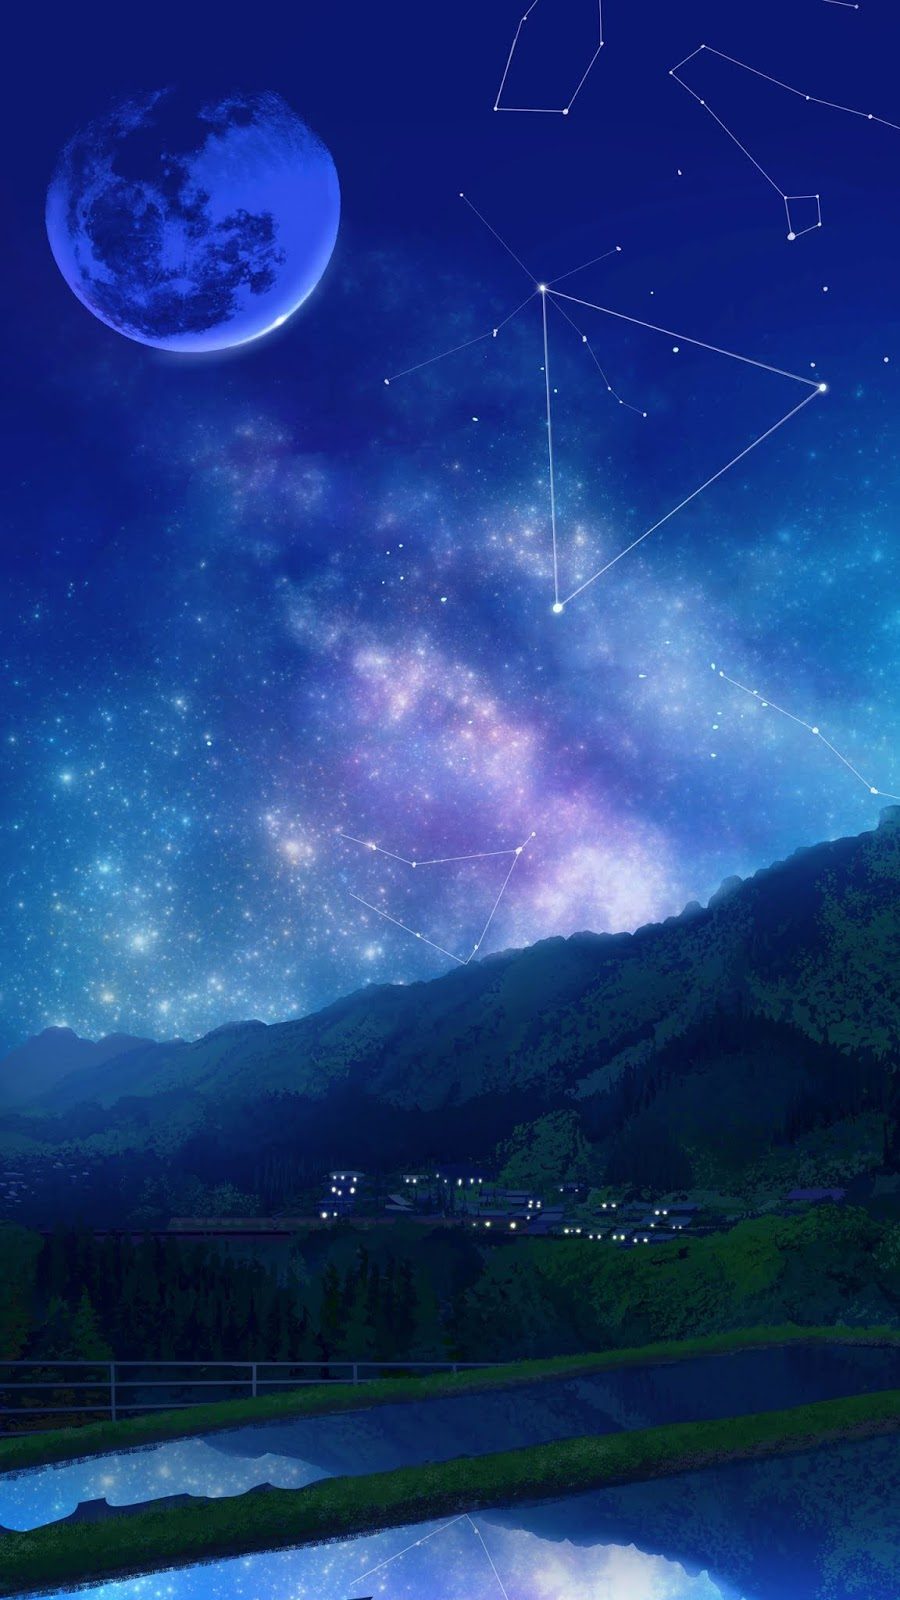 Ban đầu Màu Xanh đậm Bầu Trời đầy Sao Tinh Vân Bầu Trời đêm Anime Gió Rừng  Cắt Hình Nền | Nền PSD Tải xuống miễn phí - Pikbest